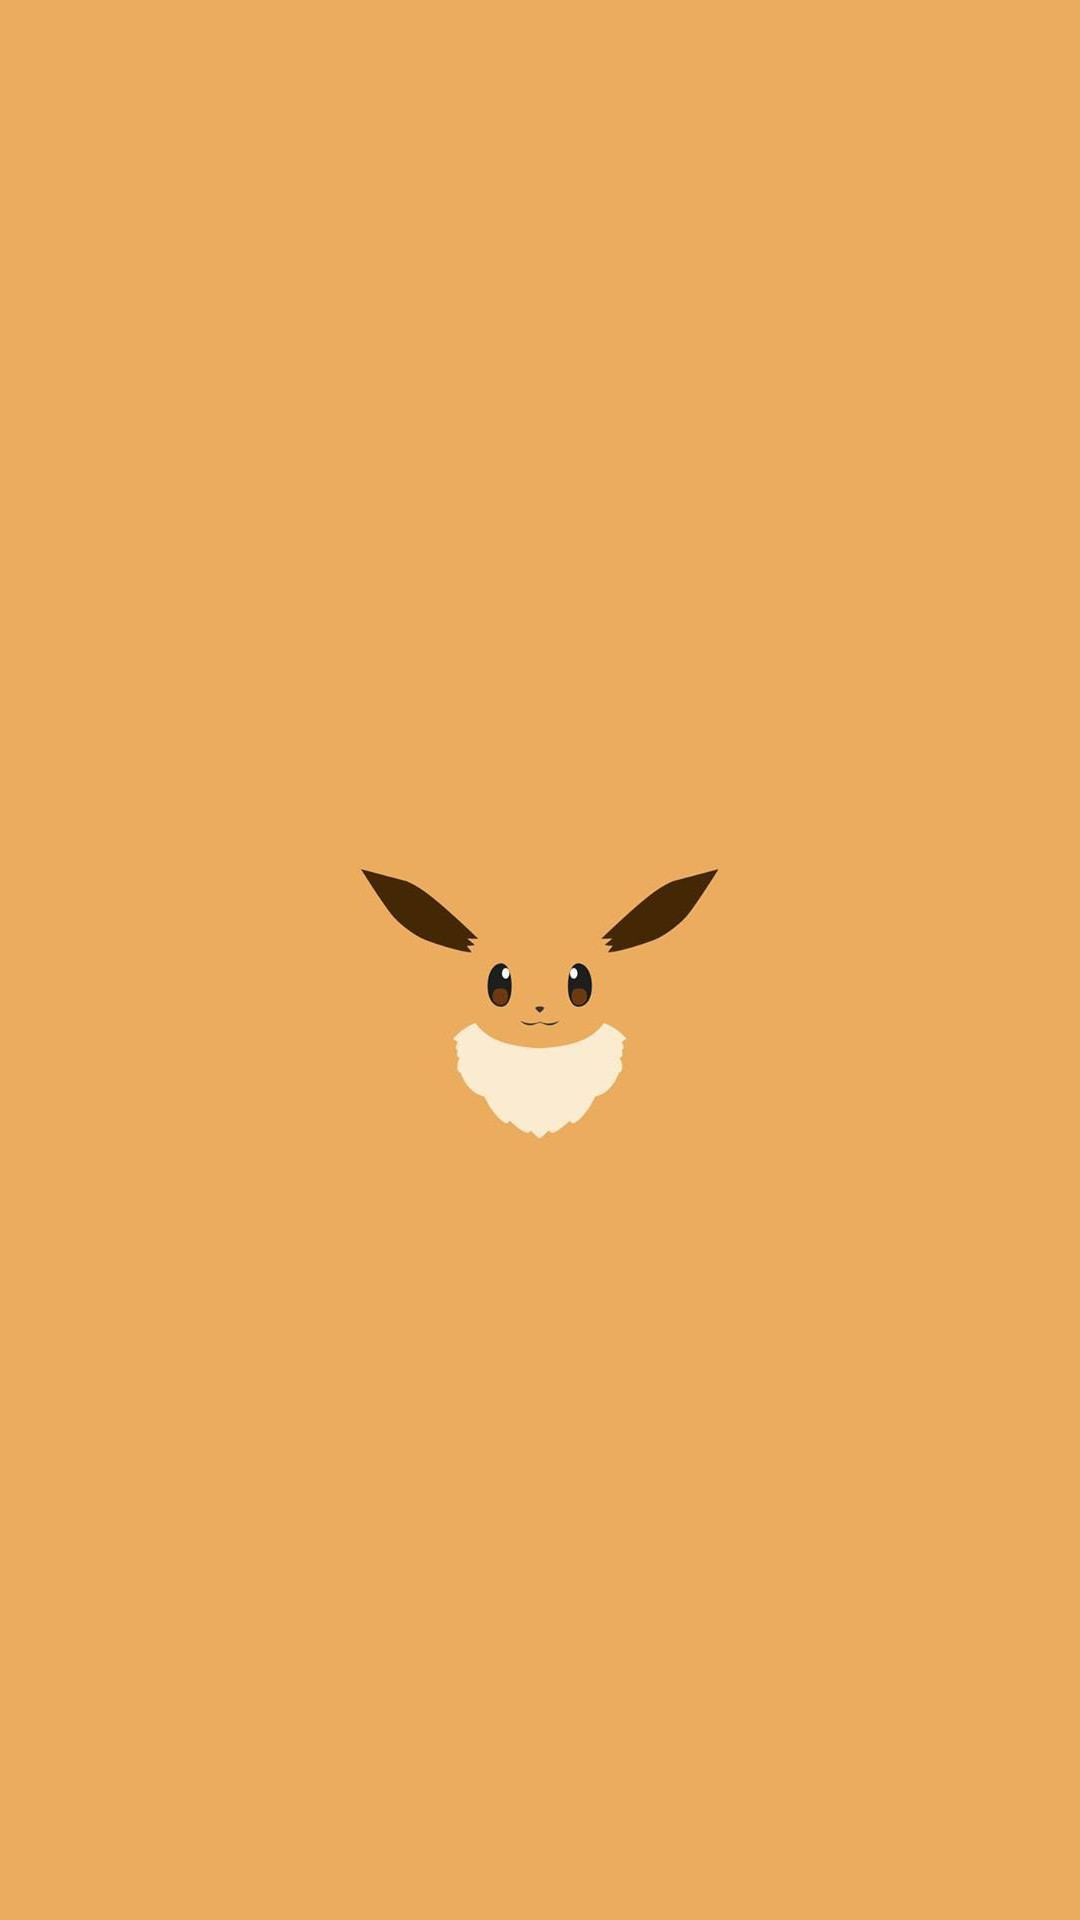 Eevee Pokemon Character iPhone 6+ HD Wallpaper – https://freebestpicture.com